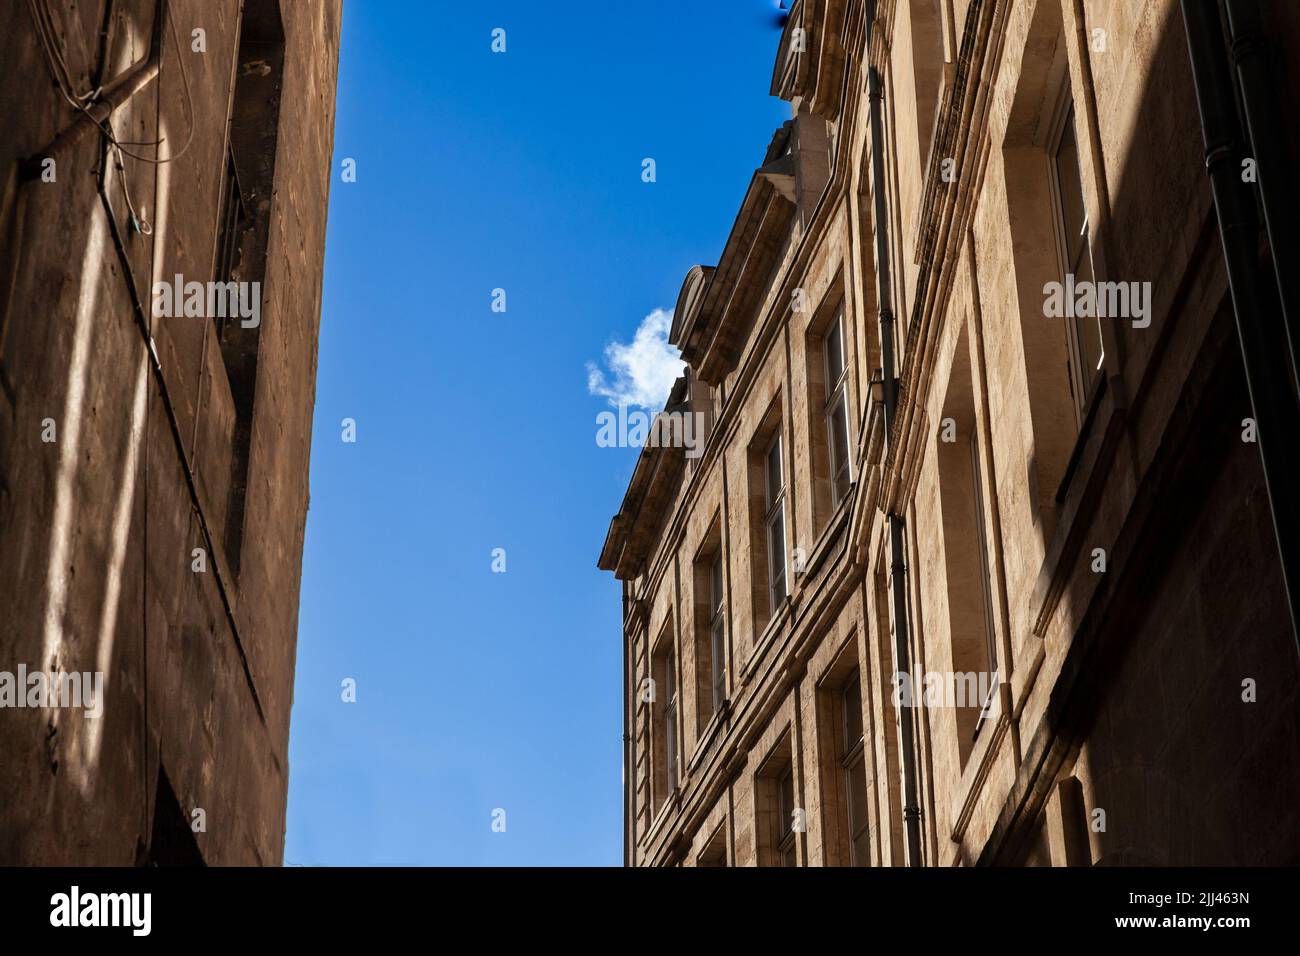 Bild von einem typischen Gebäude des Stadtzentrums von Bordeaux, Frankreich, auf einem Wohngebäude. Stockfoto